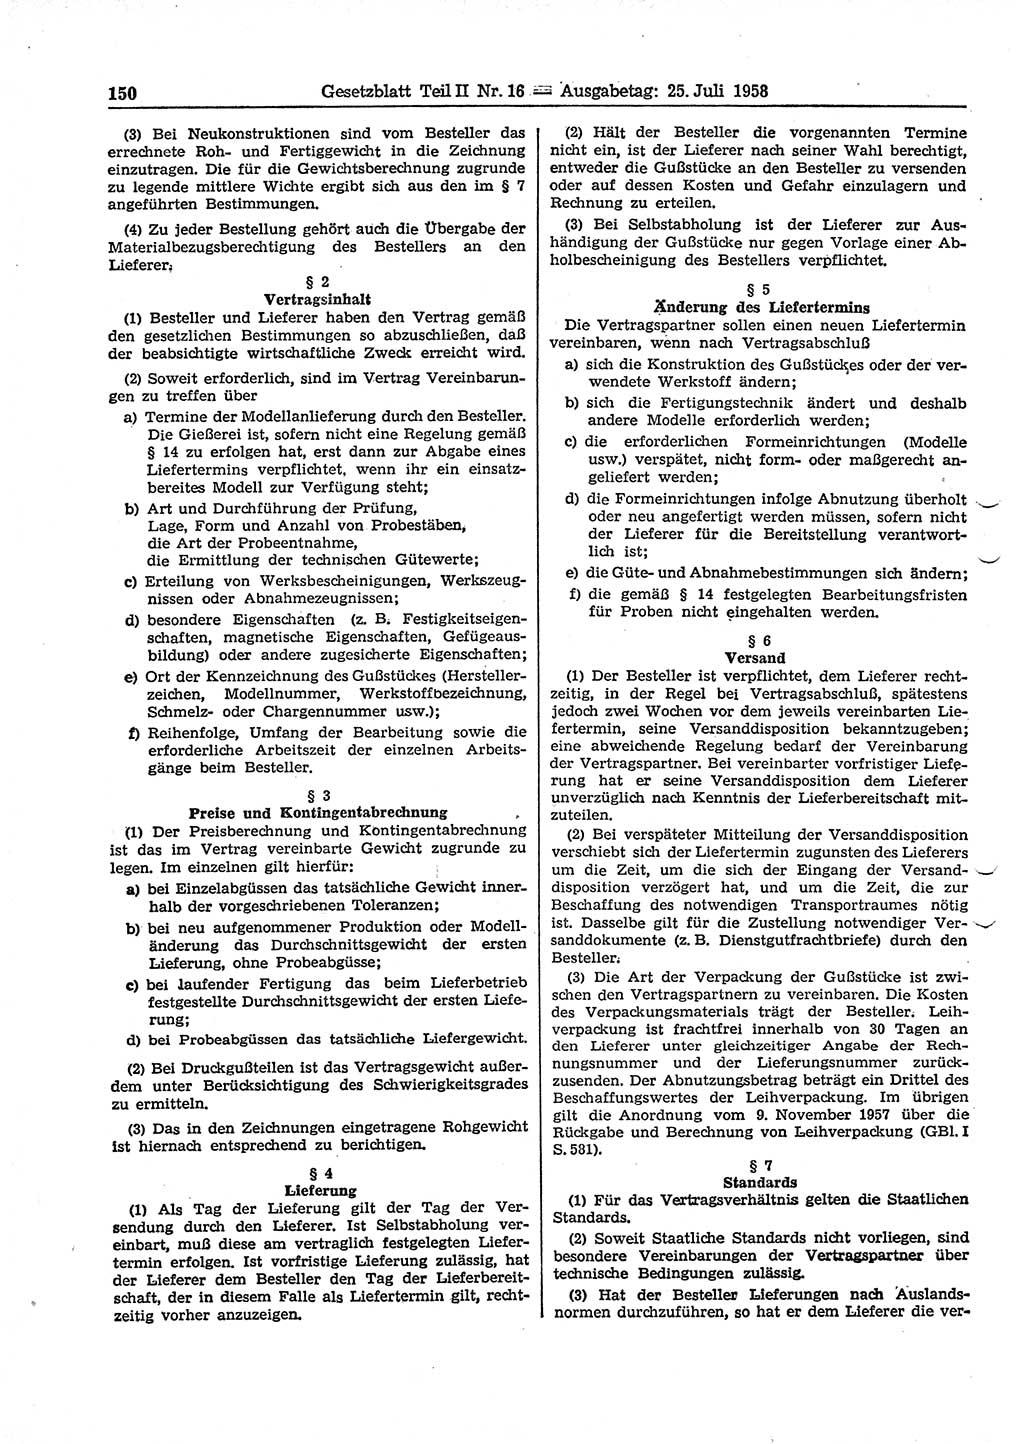 Gesetzblatt (GBl.) der Deutschen Demokratischen Republik (DDR) Teil ⅠⅠ 1958, Seite 150 (GBl. DDR ⅠⅠ 1958, S. 150)